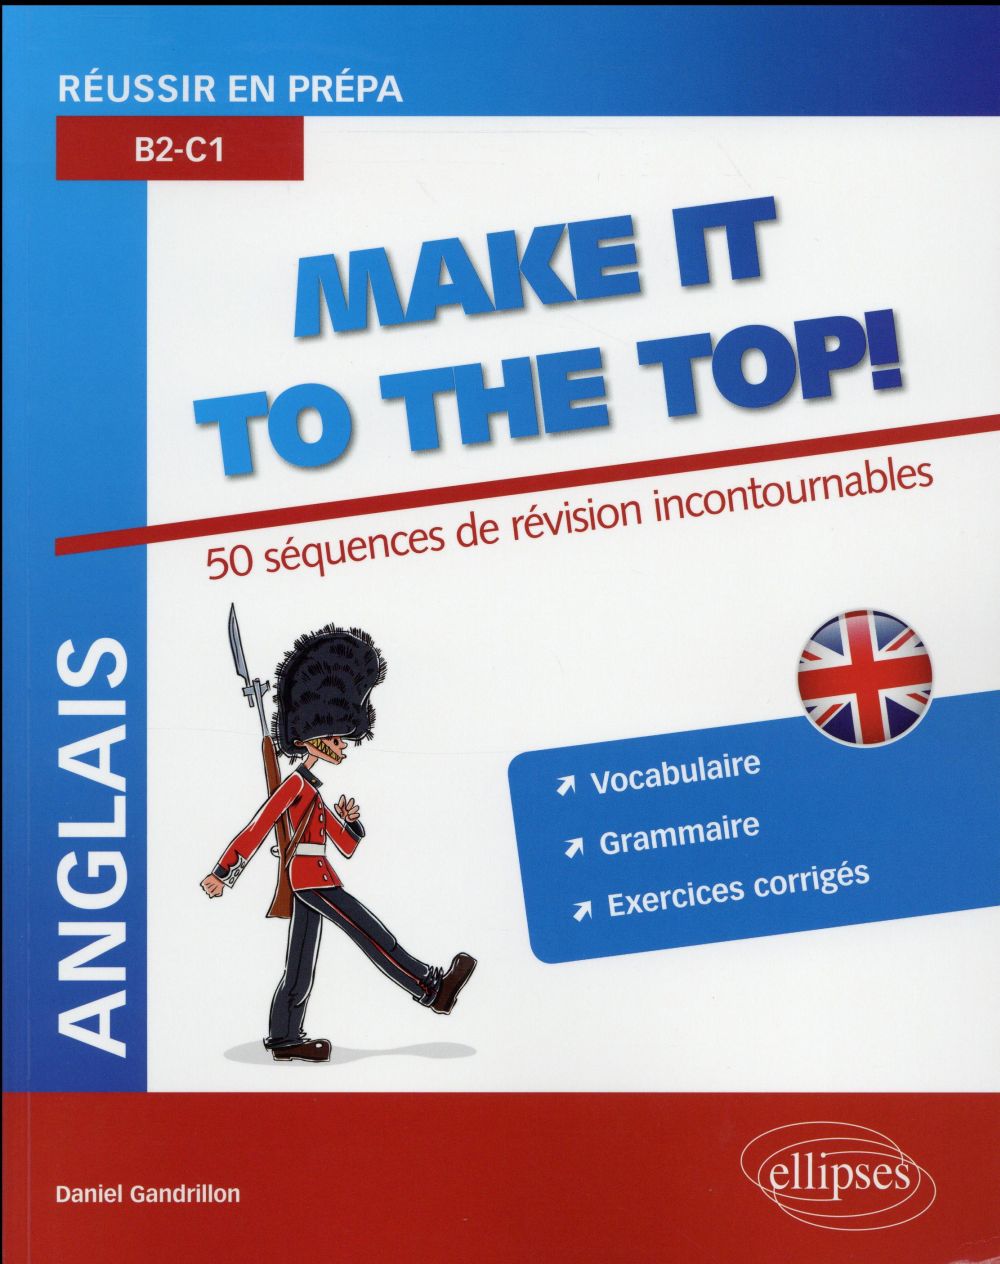 ANGLAIS. REUSSIR EN PREPA. MAKE IT TO THE TOP! 50 SEQUENCES DE REVISION INCONTOURNABLES. VOCABULAIRE